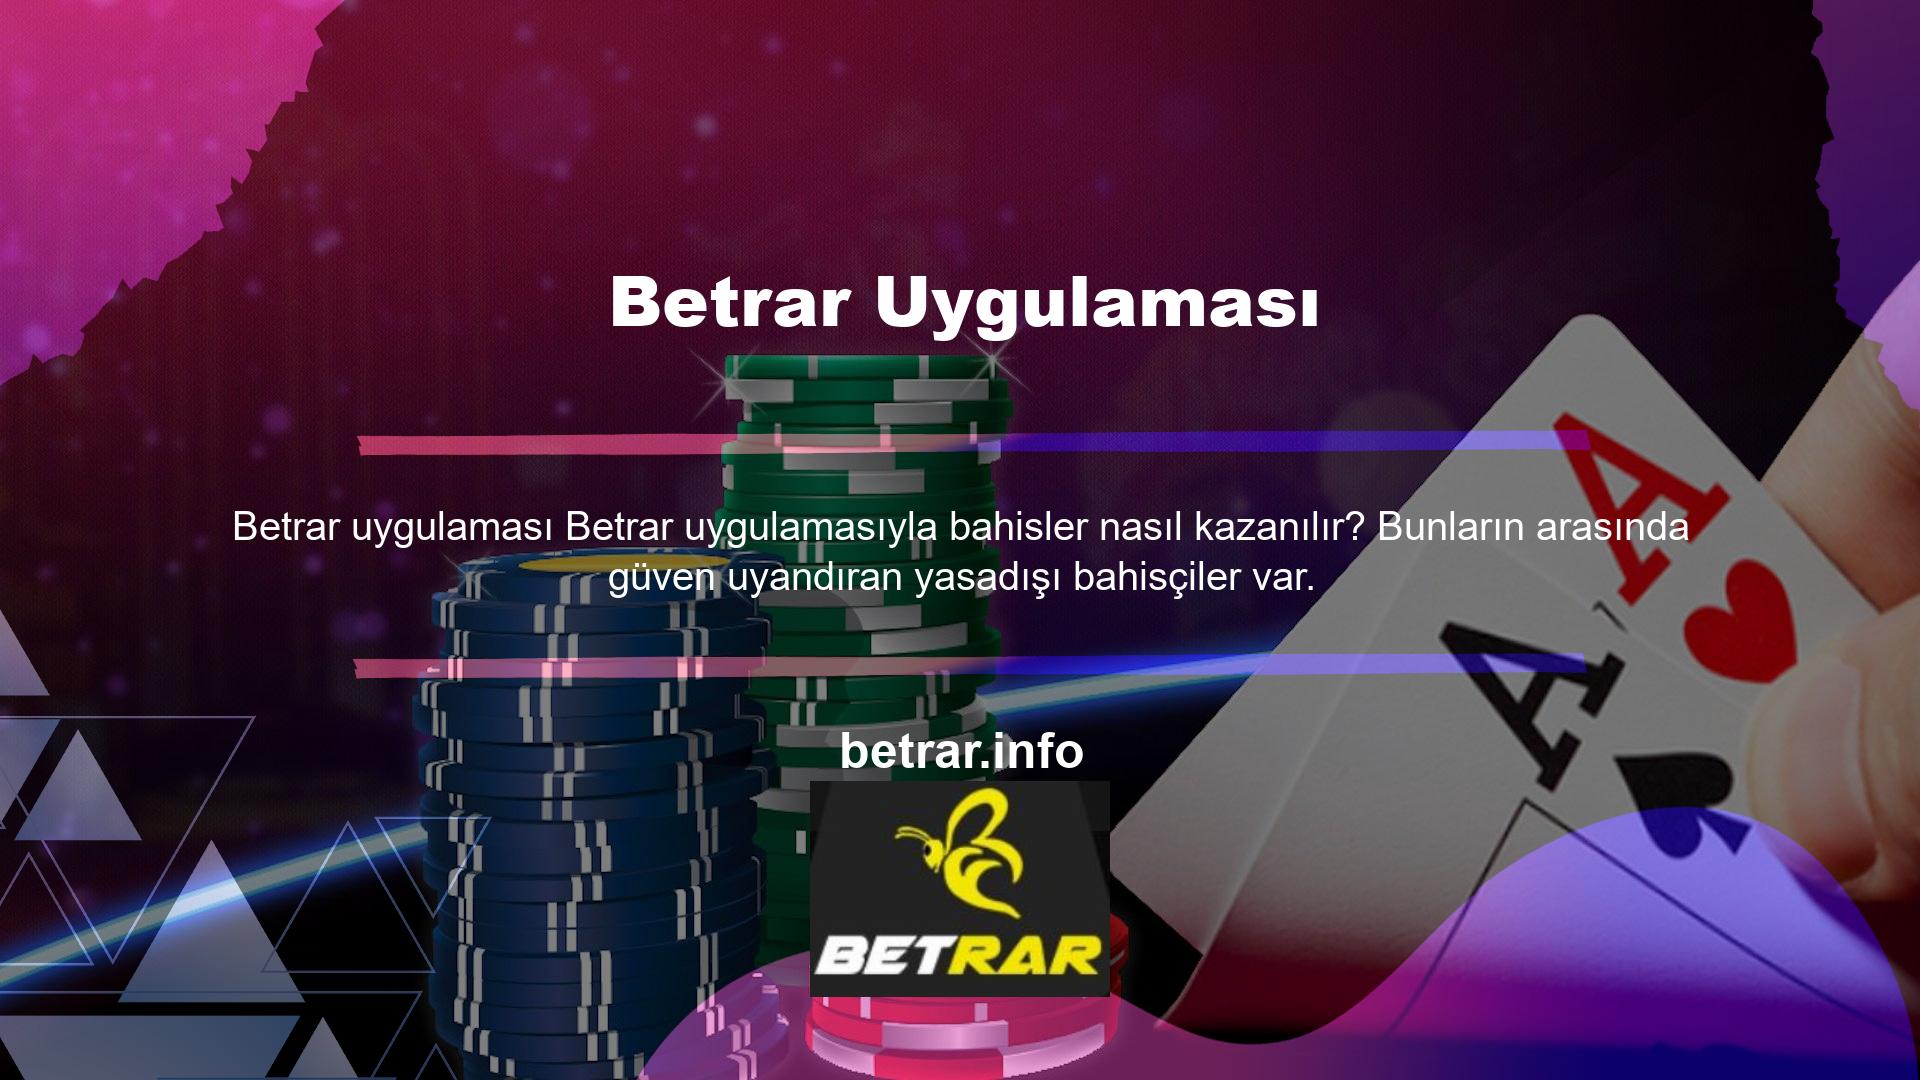 Betrar, Türk casino oyunlarına ilgi duyanların en çok aradığı ve tercih ettiği bahis şirketlerinden biridir